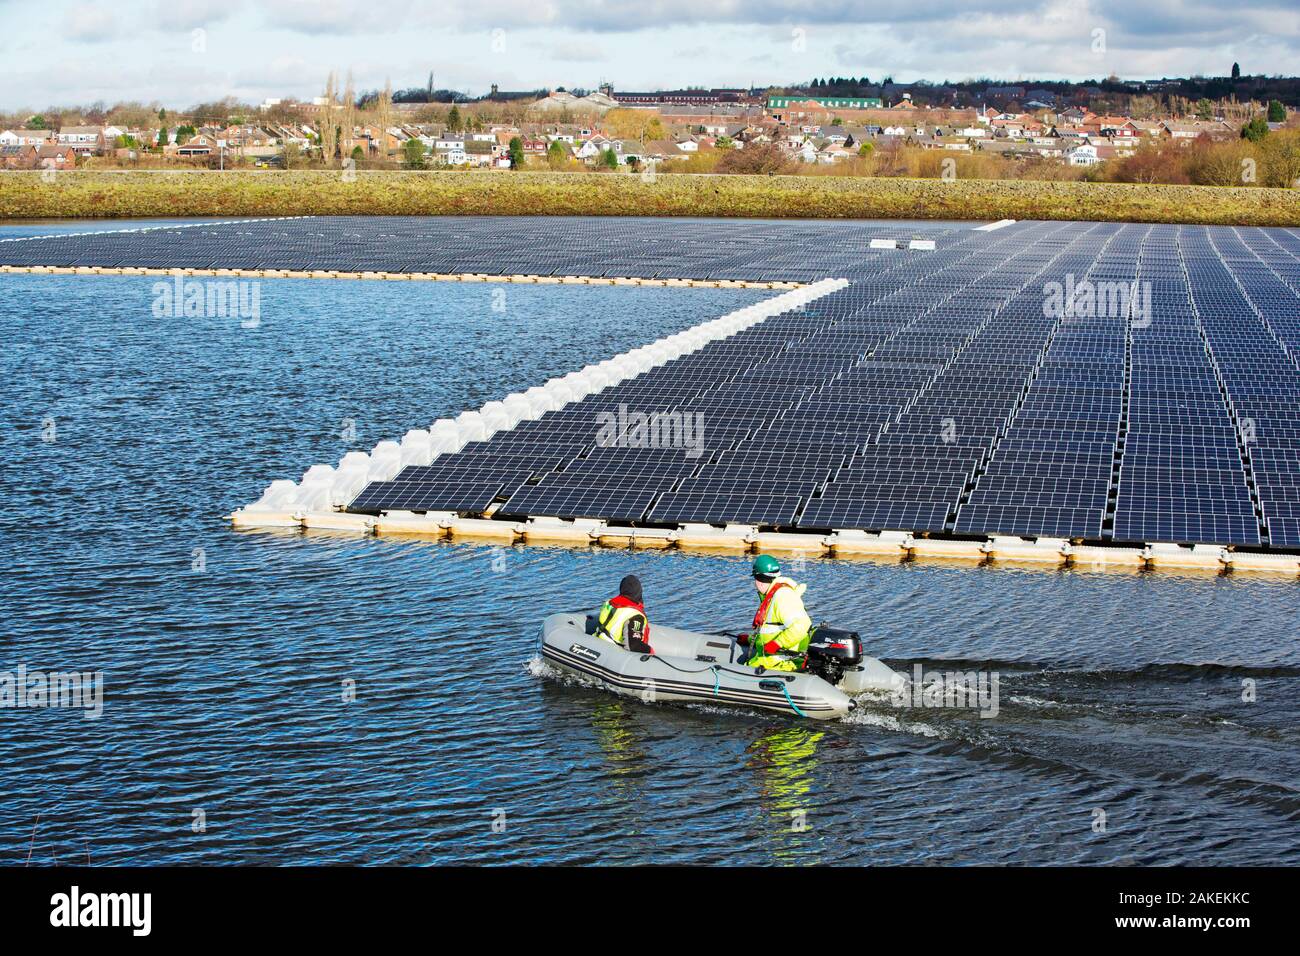 La ferme solaire flottante étant raccordés au réseau sur Godley Réservoir dans Hyde, Manchester, Angleterre, Royaume-Uni. Février 2016 Banque D'Images